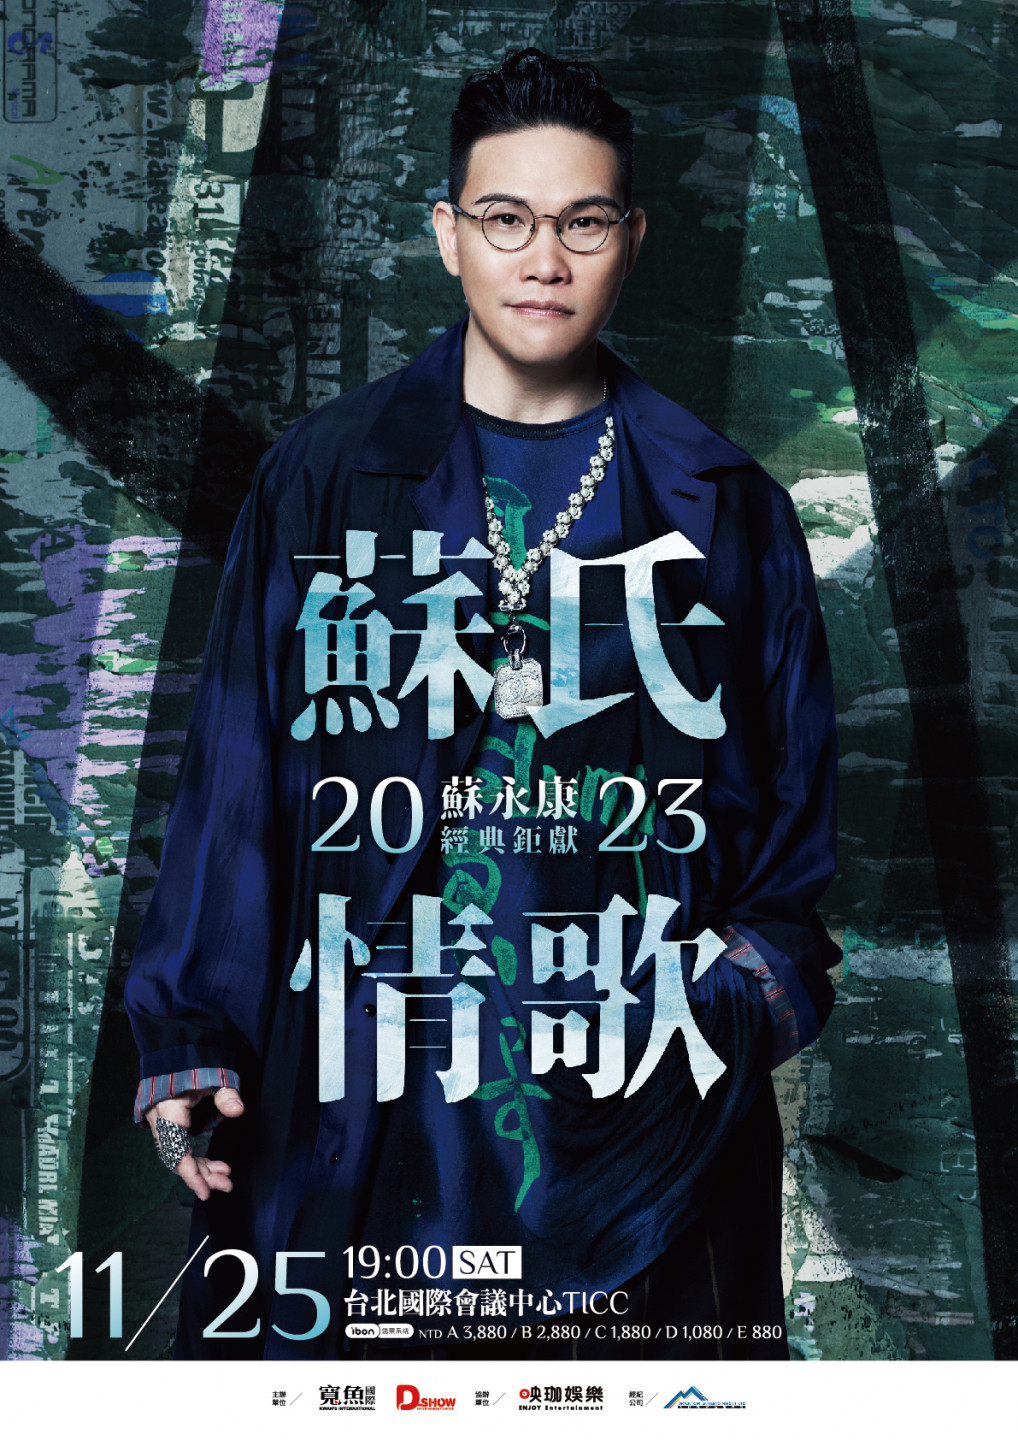 2023 蘇永康 蘇氏情歌 台北演唱會 海報-寬魚國際提供